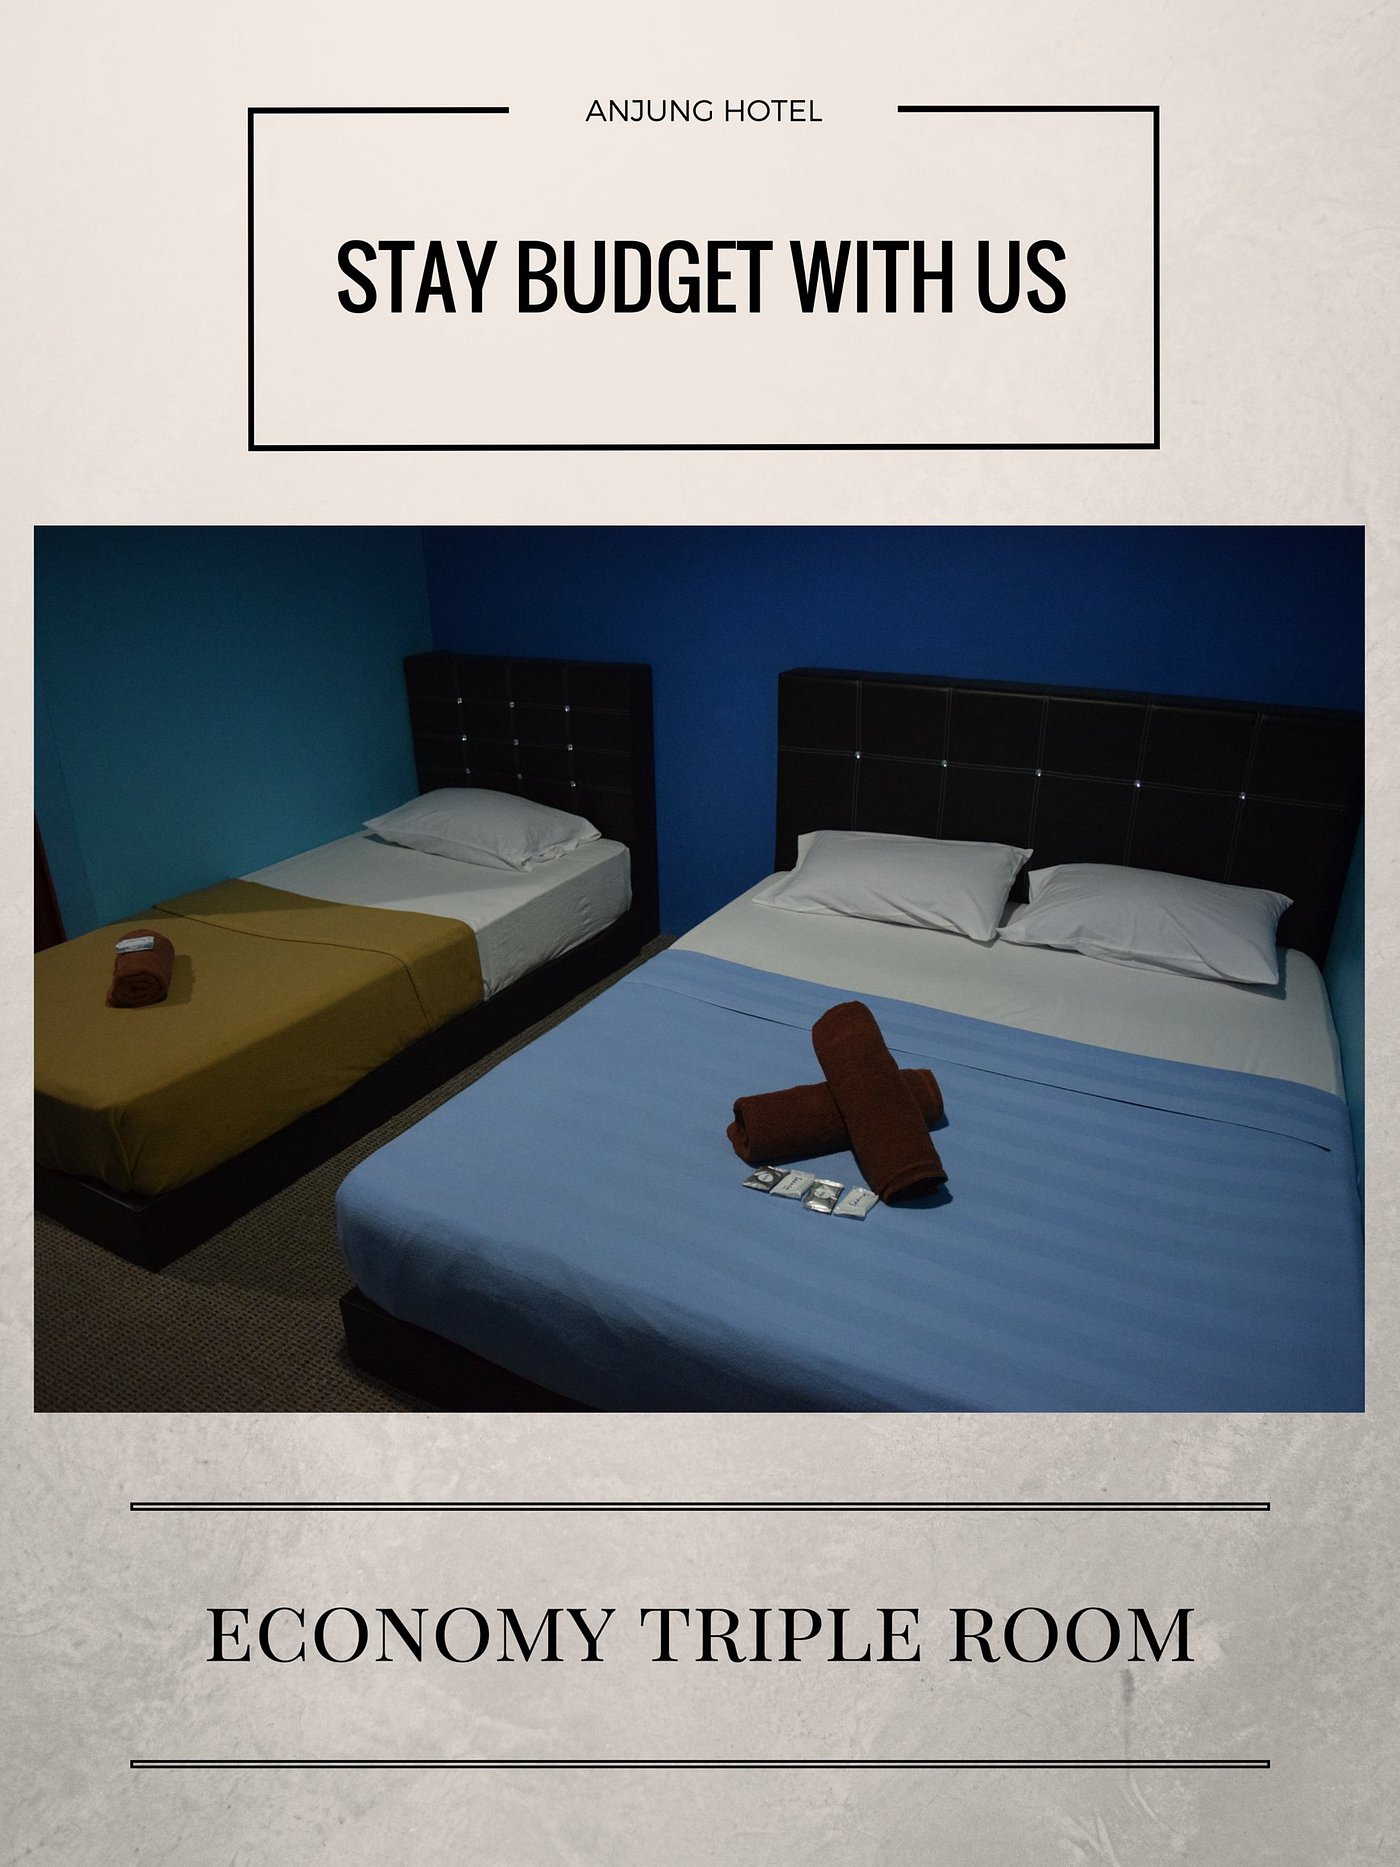 ANJUNG HOTEL (Muadzam Shah) - отзывы, фото и сравнение цен - Tripadvisor